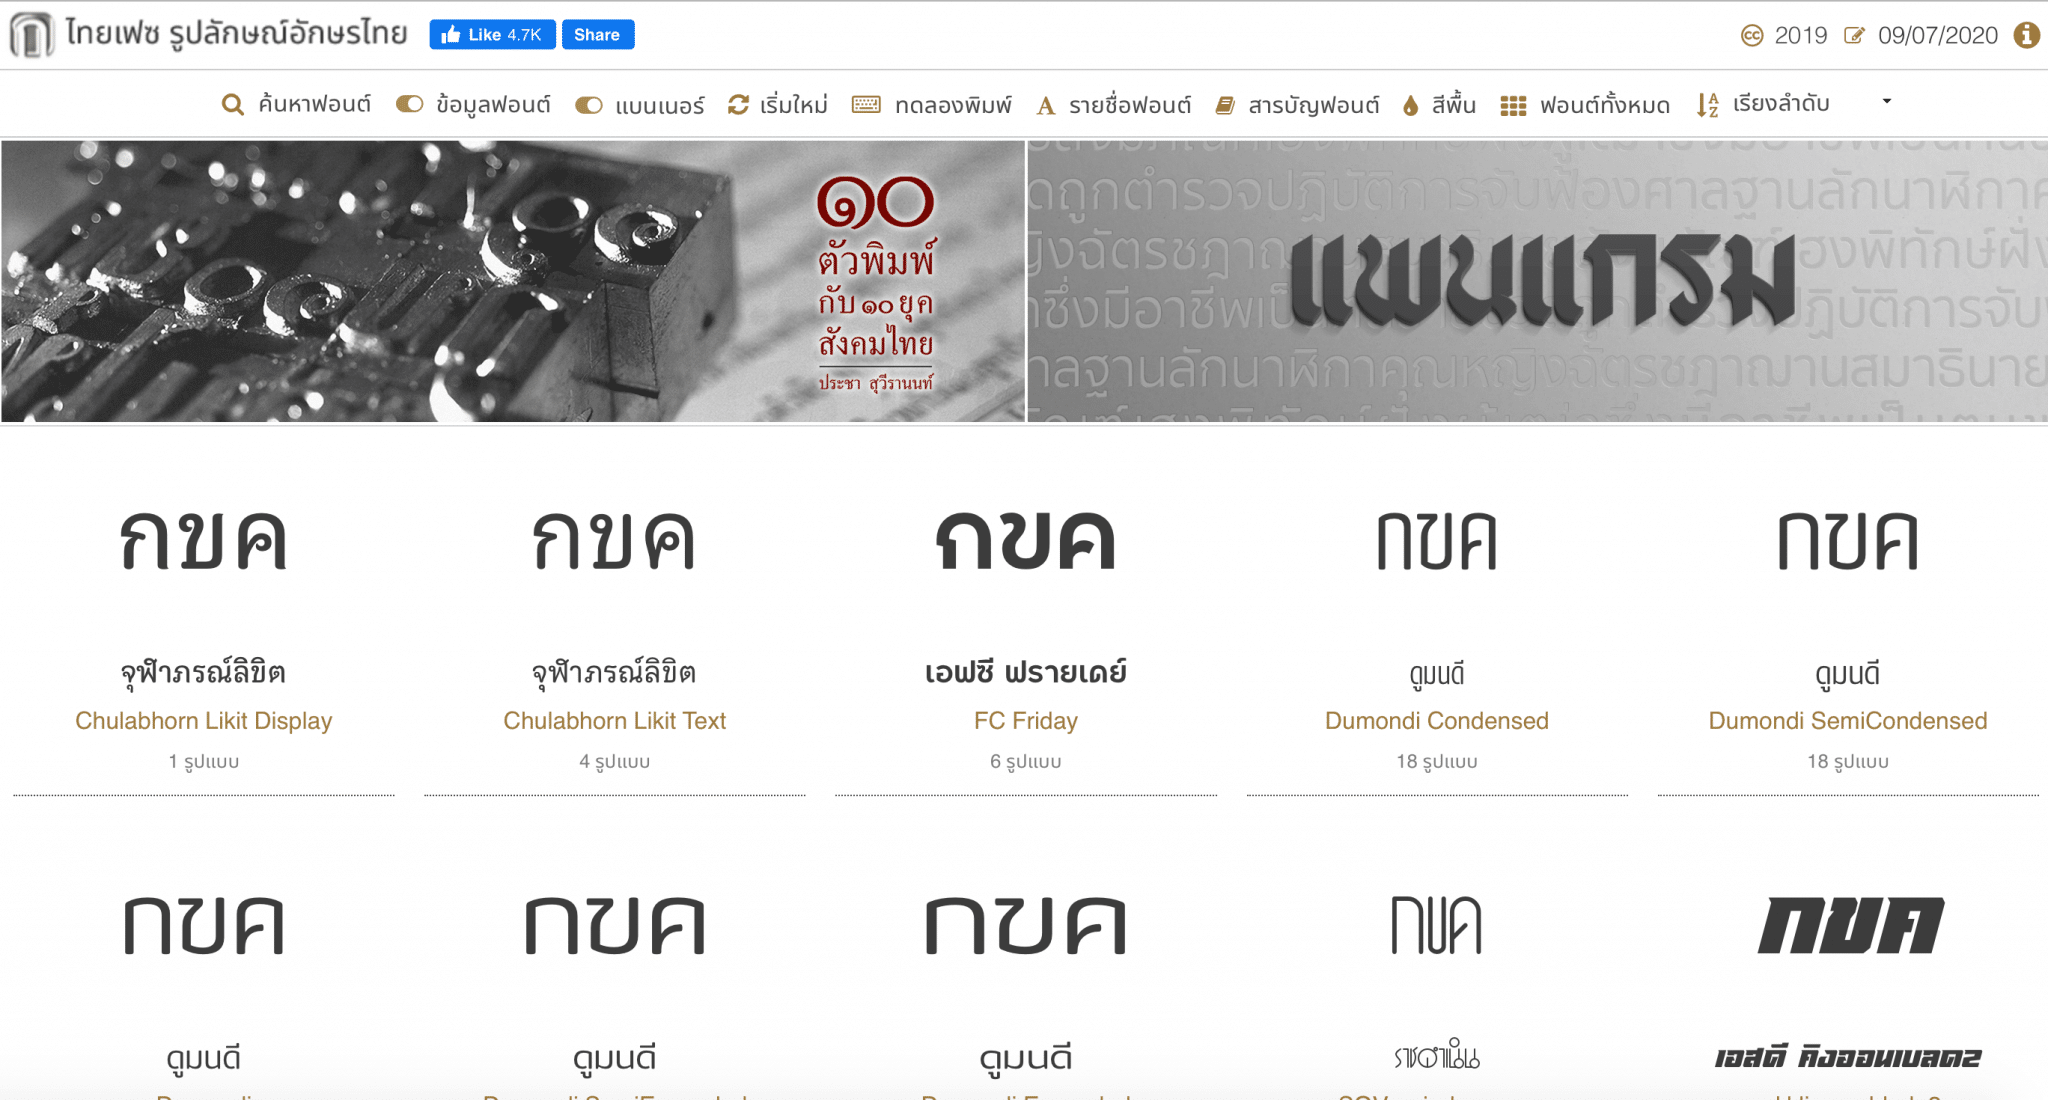 www.thaifaces.com รูปลักษณ์อักษรไทย เว็บไซต์ฟอนต์ไทยอีกเว็บหนึ่ง ที่มีนักสร้างสรรค์รวมเว็บไว้มากมาย สามารถดาวน์โหลดไปใช้กันได้ฟรีๆ 